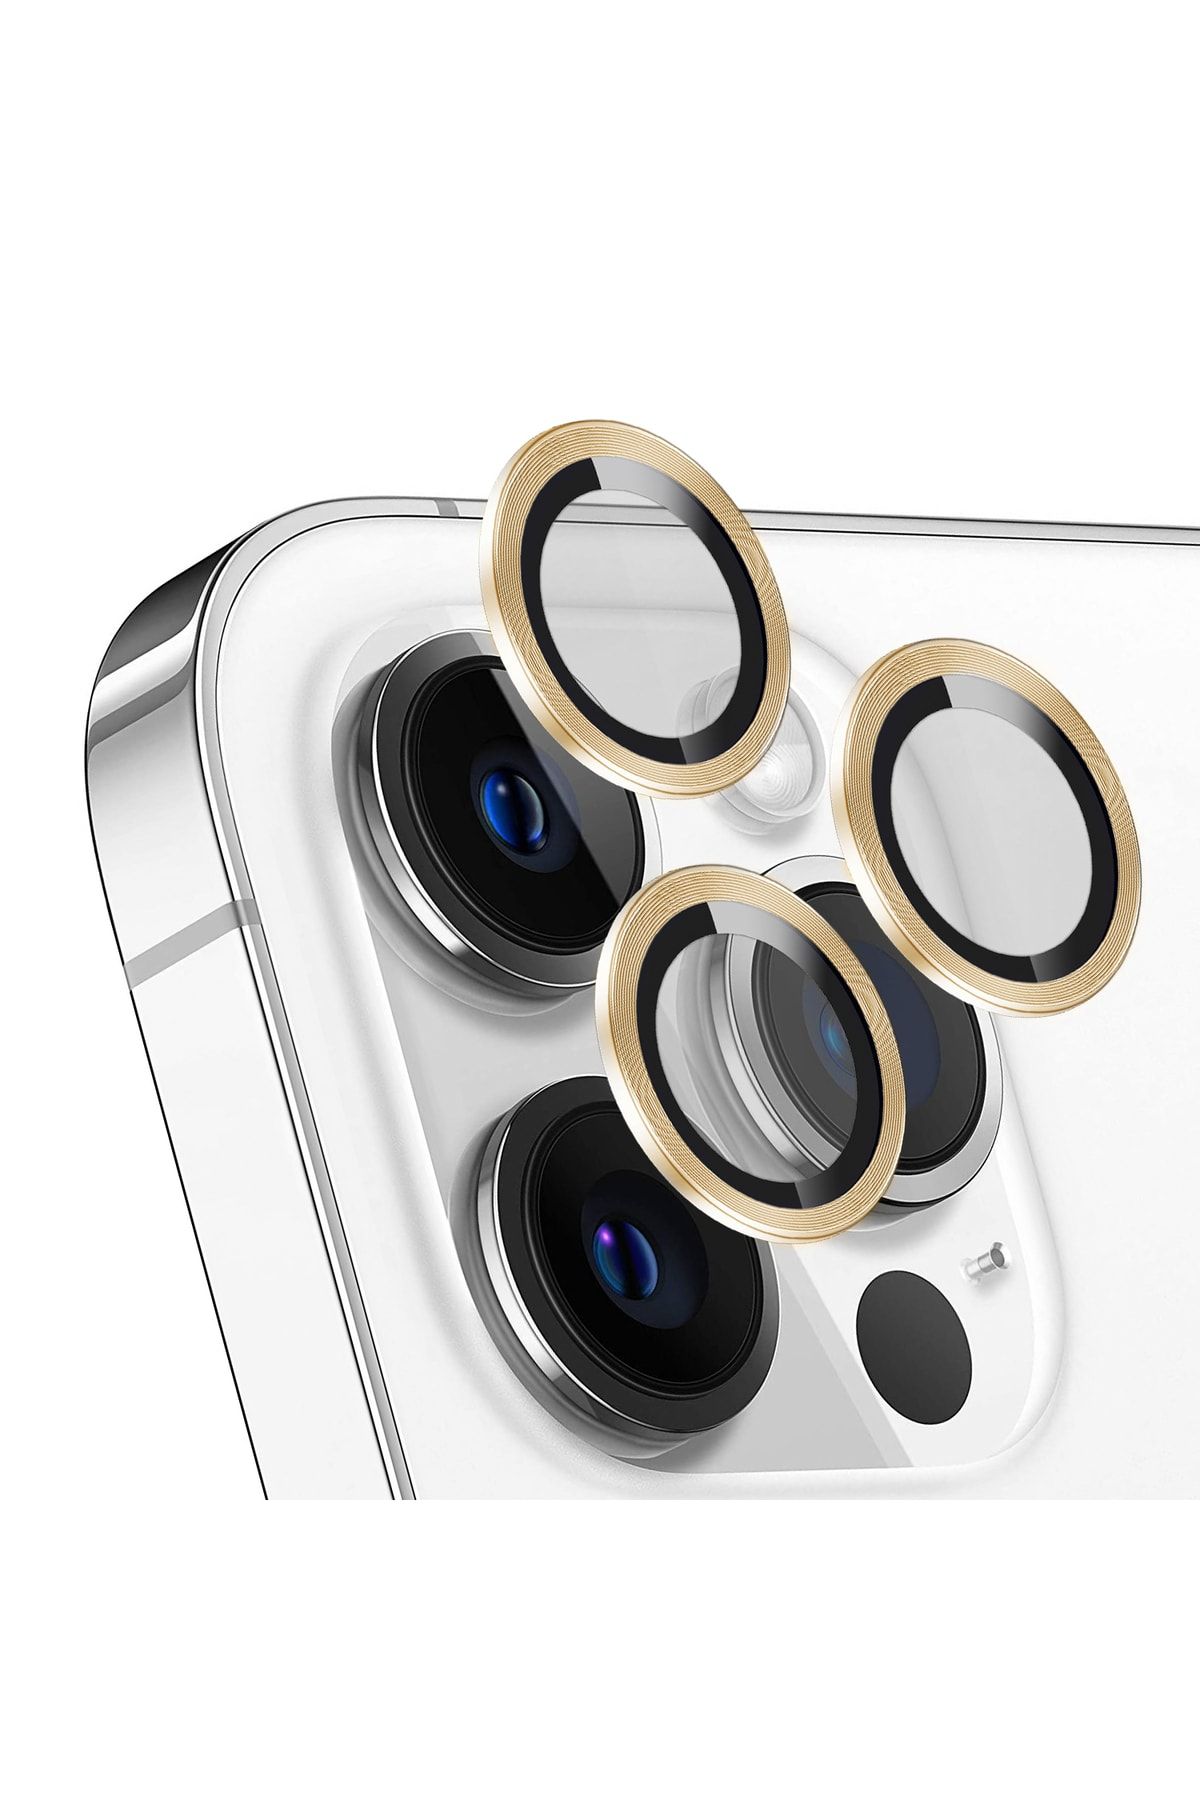 Bufalo Iphone 11 Pro Uyumlu Kamera Lens Koruyucu Cam Metal Kenarlı 3lü Set Gold-altın